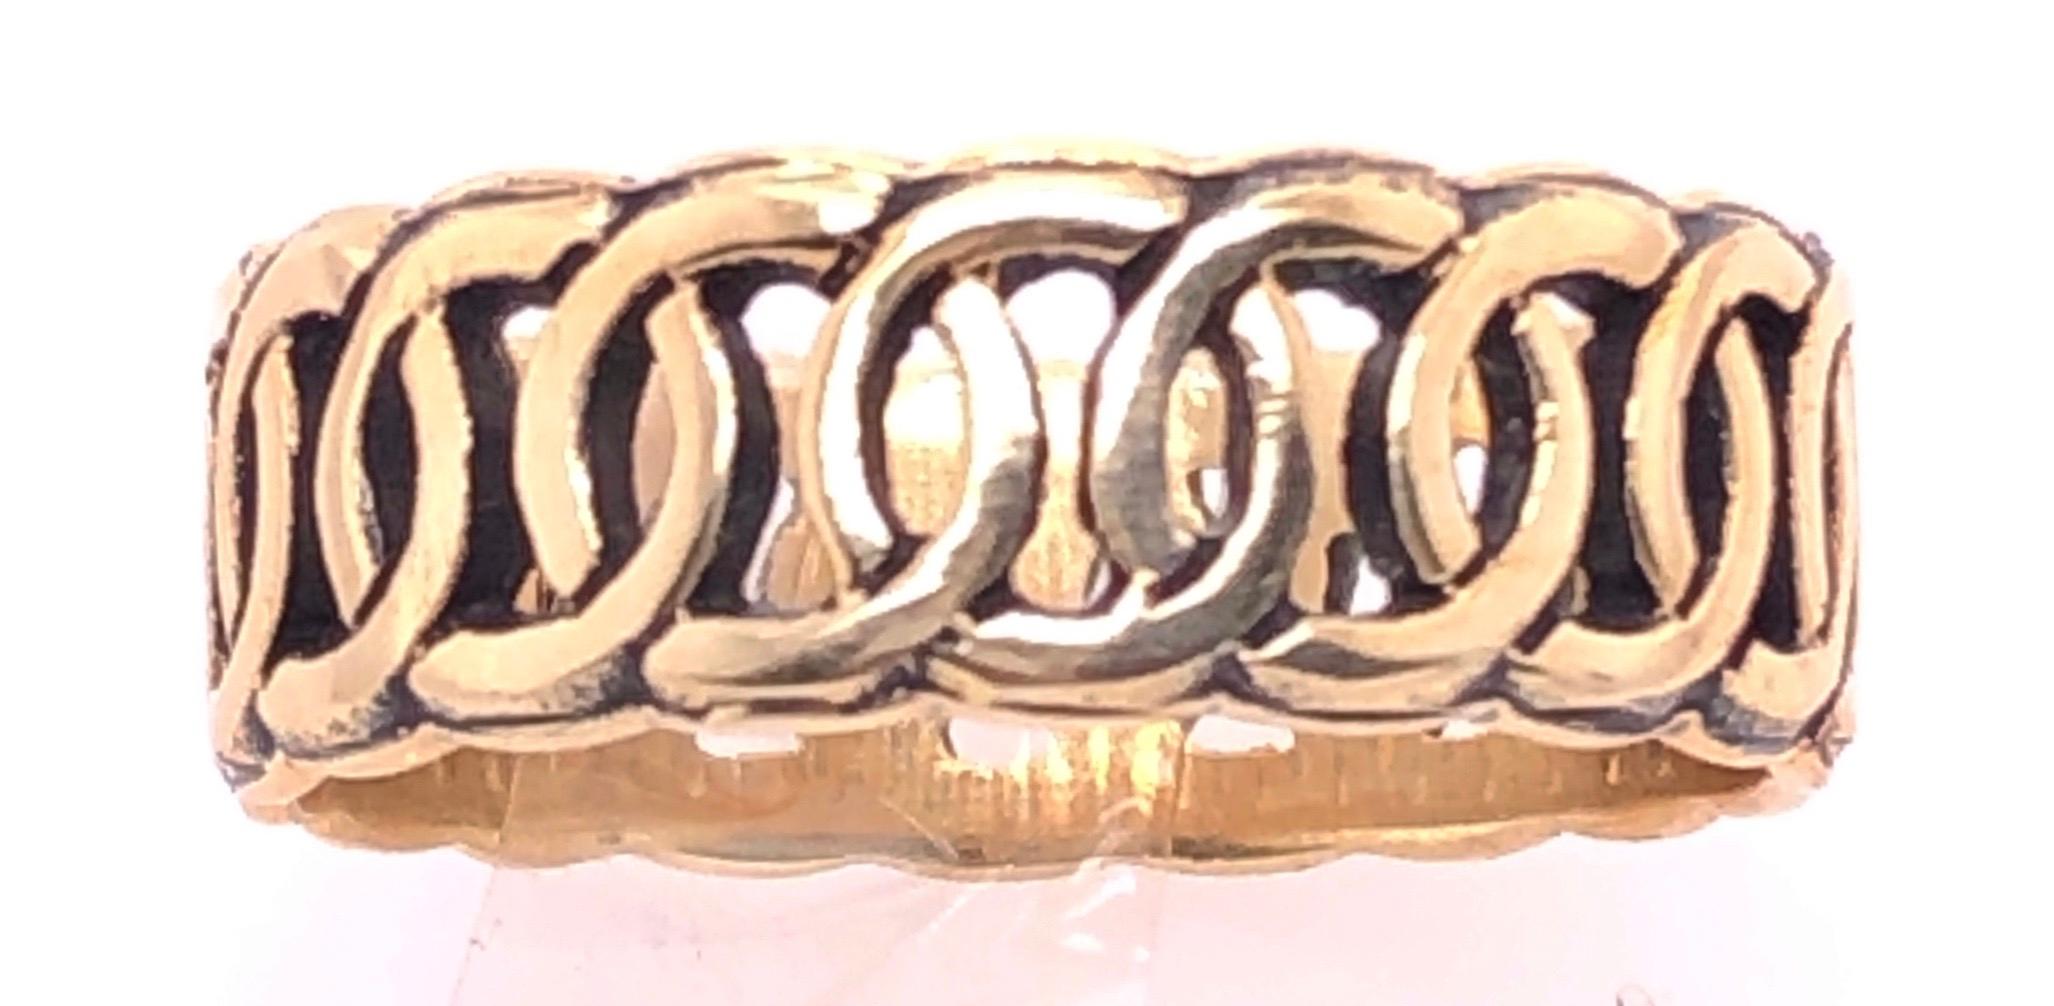 14 Karat Yellow Gold Band/Wedding Ring Size 5.5.
4.7 grams total weight.